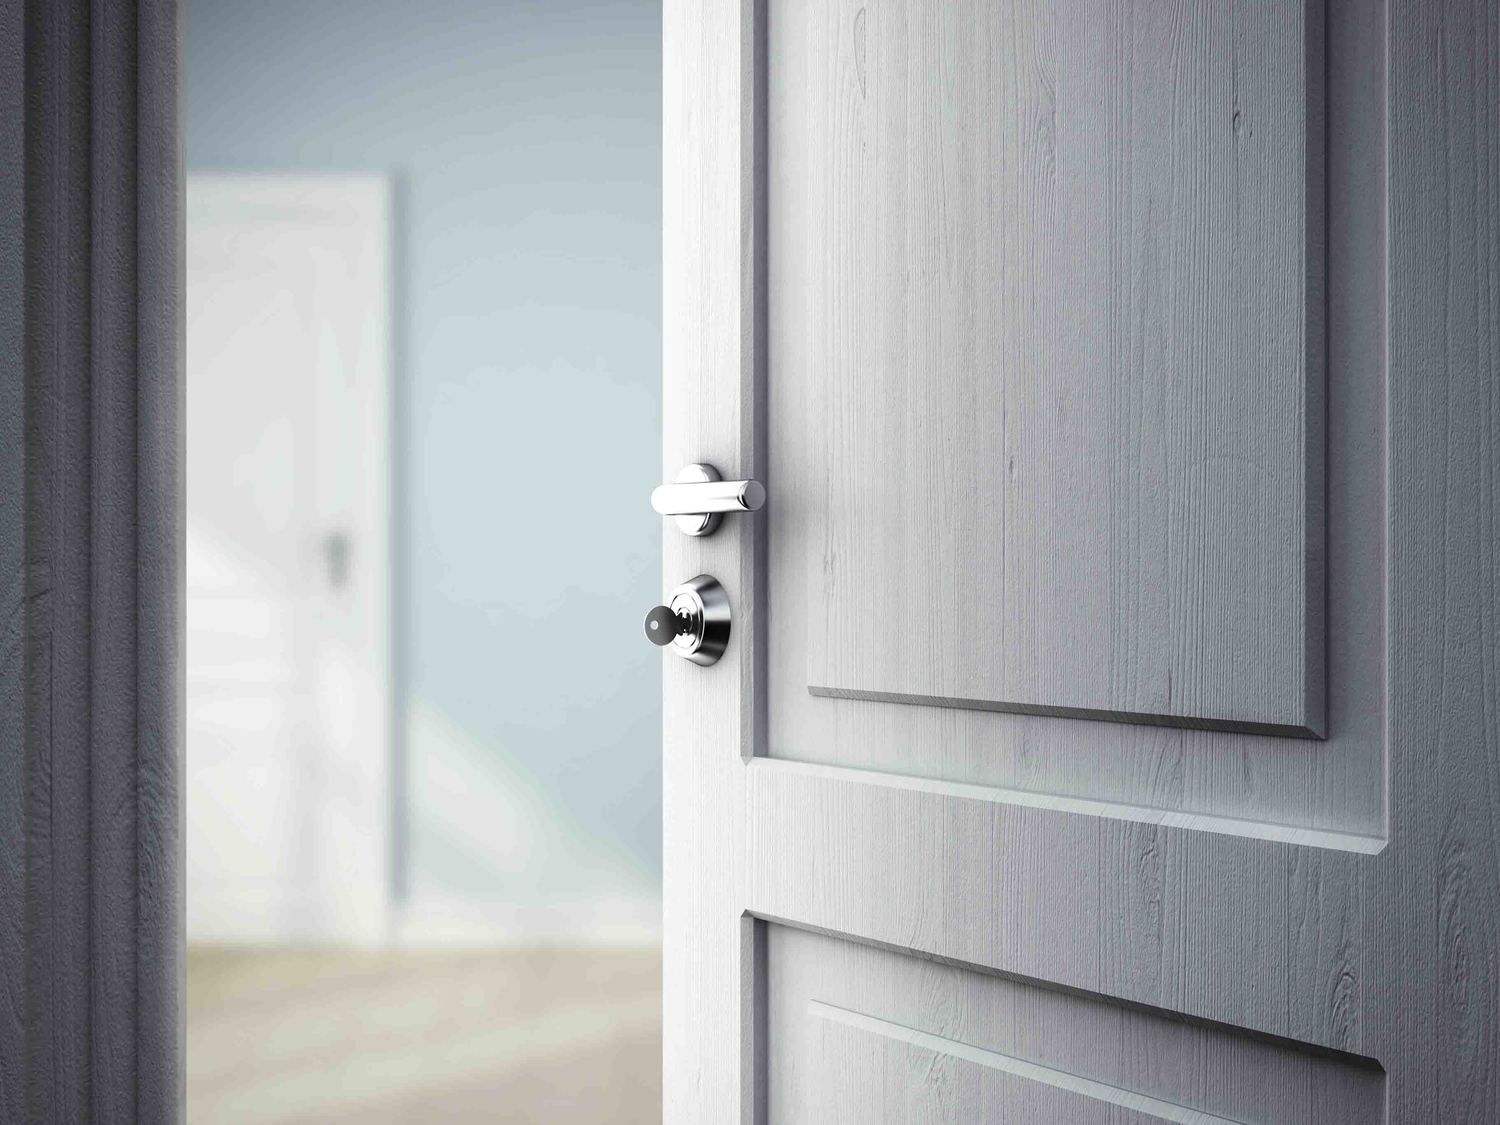 Use Temporary Blocks on the Door Jambs